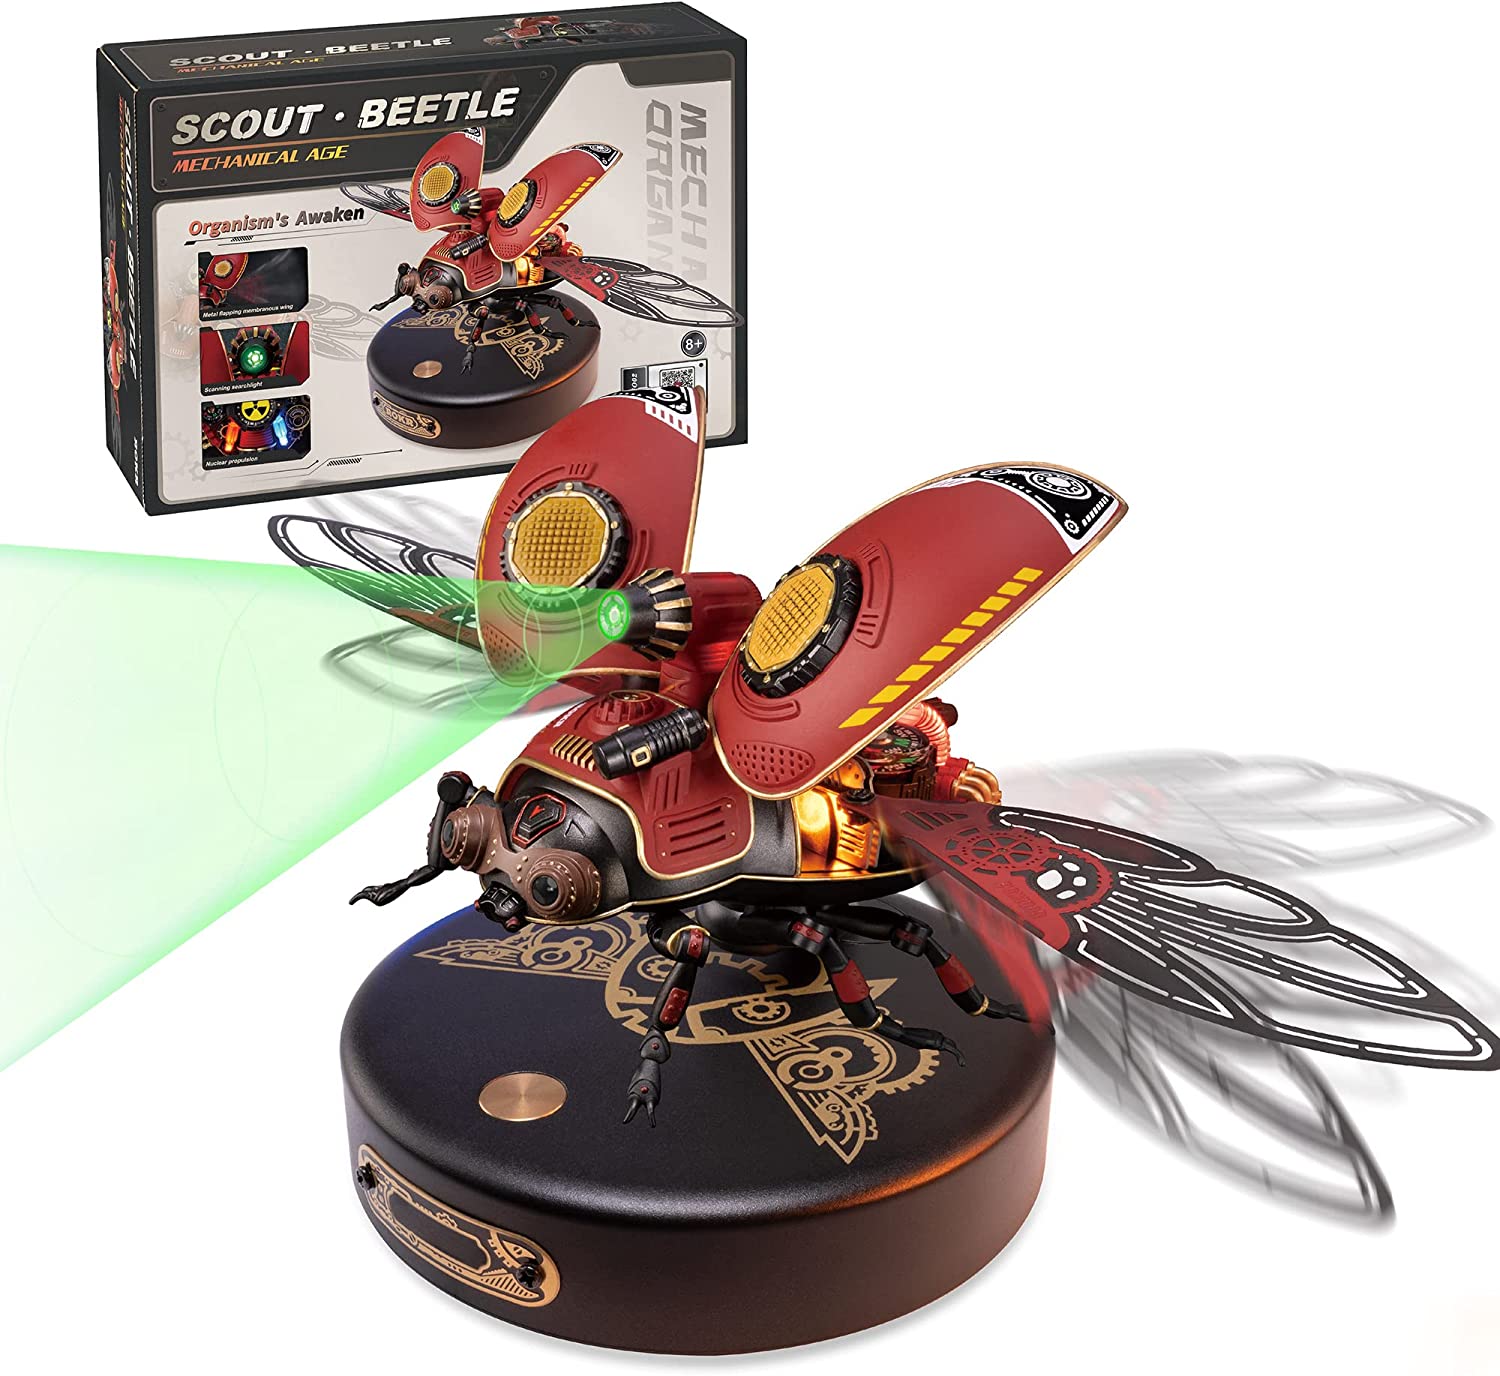 Assembled Robotime Rokr Scout Beetle Puzzle